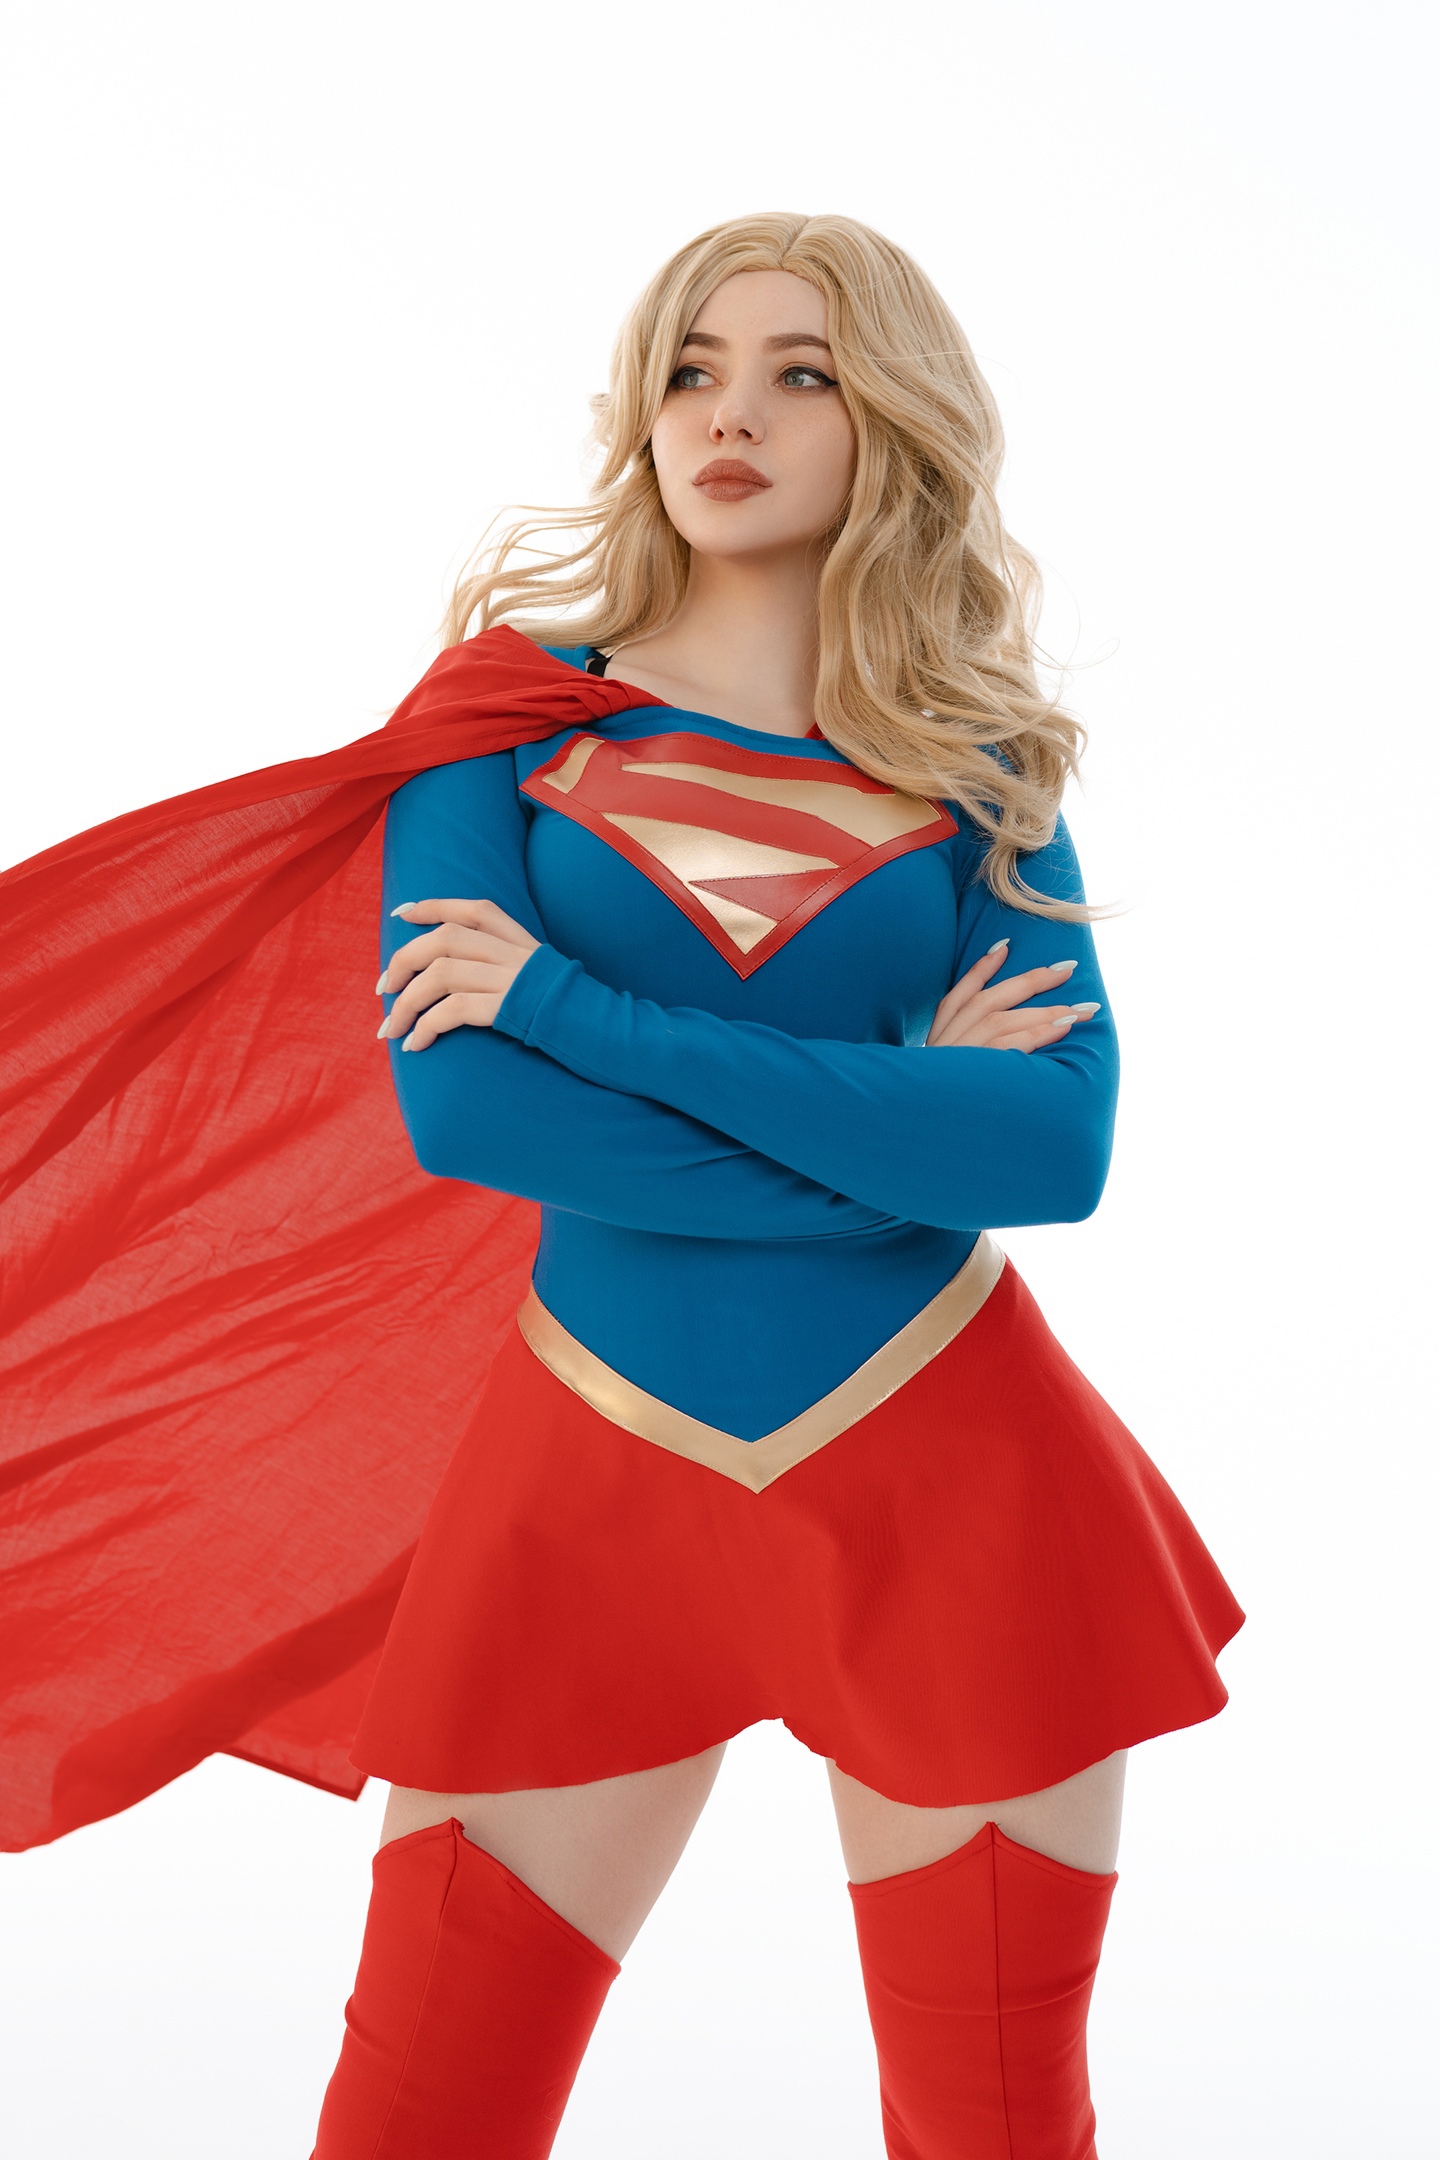 Women Model Cosplay Supergirl DC Comics Studio Indoors Women Indoors 1440x2160